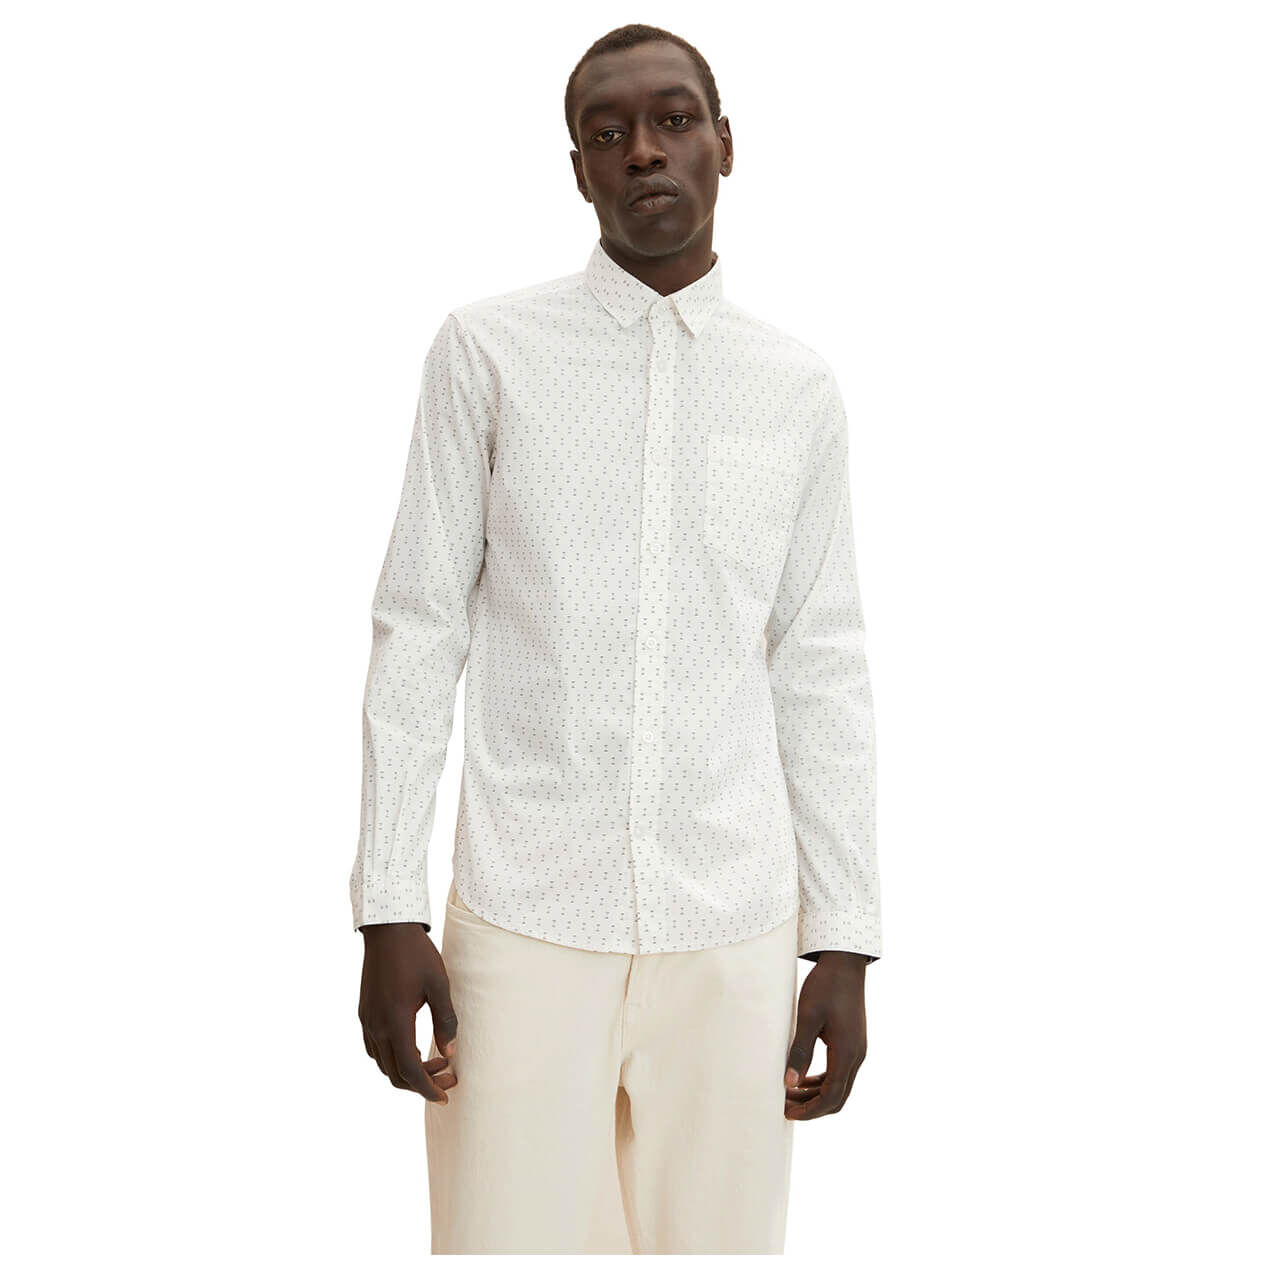 Tom Tailor Herren Hemd white with print